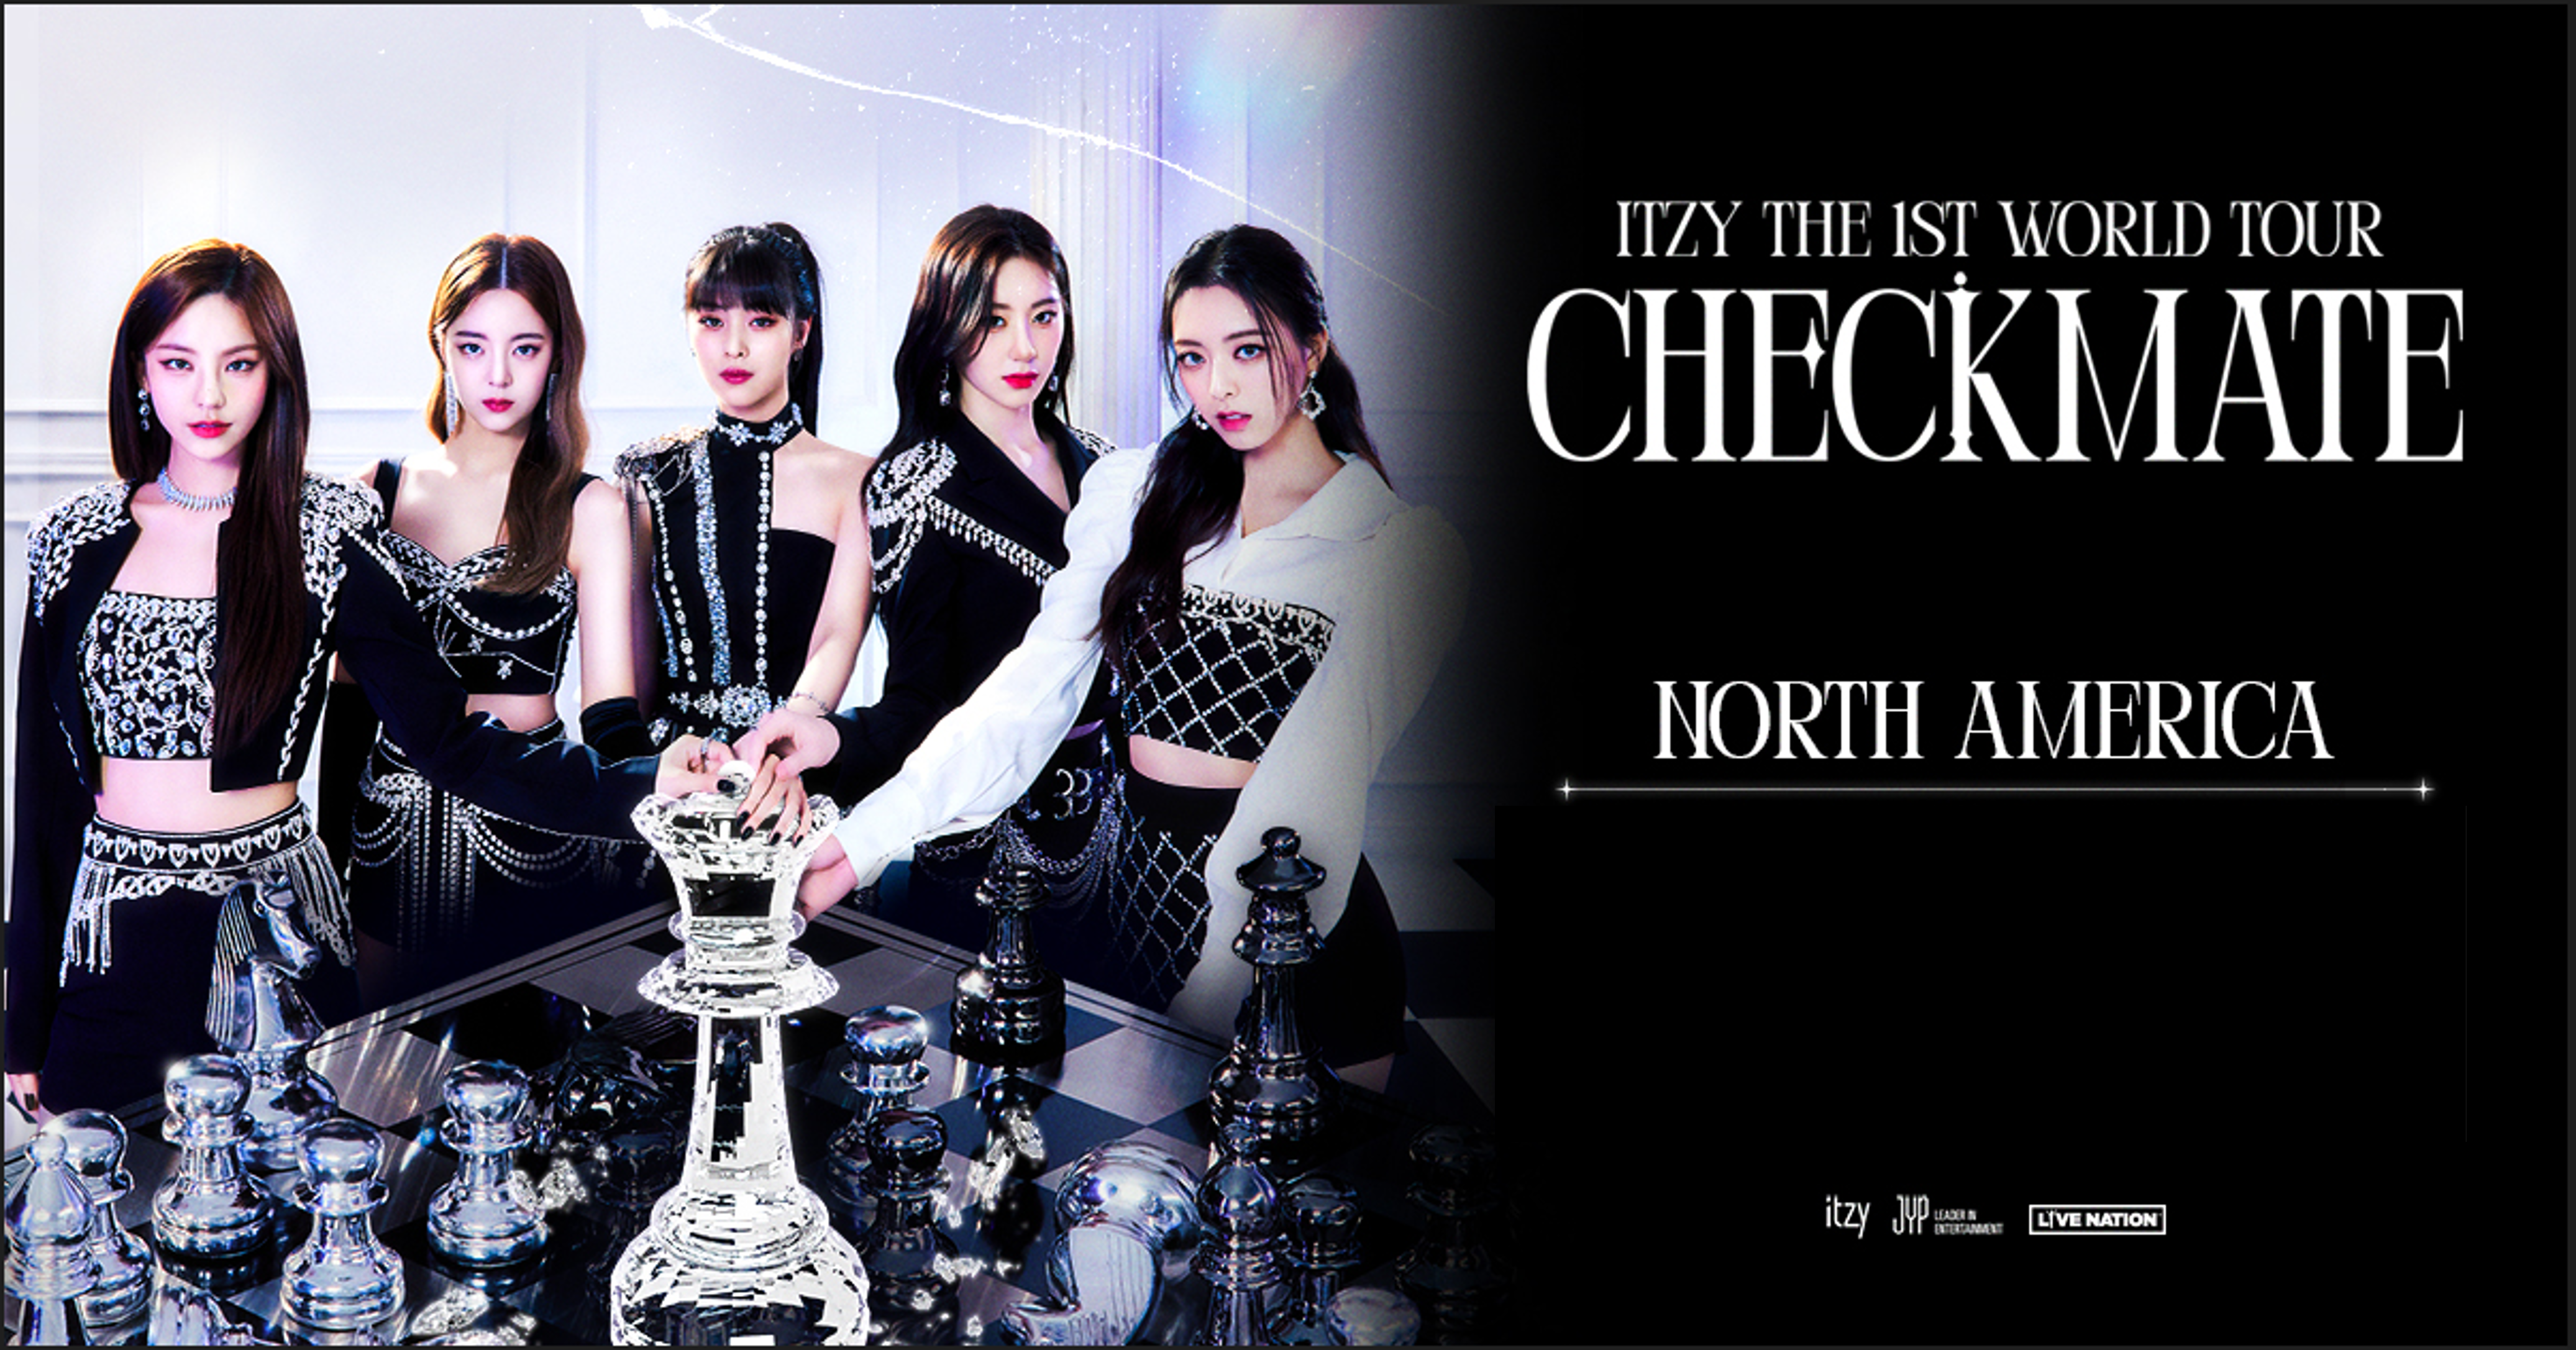 Kpop Group ITZY Reveals 1st World Tour Details - Live Nation